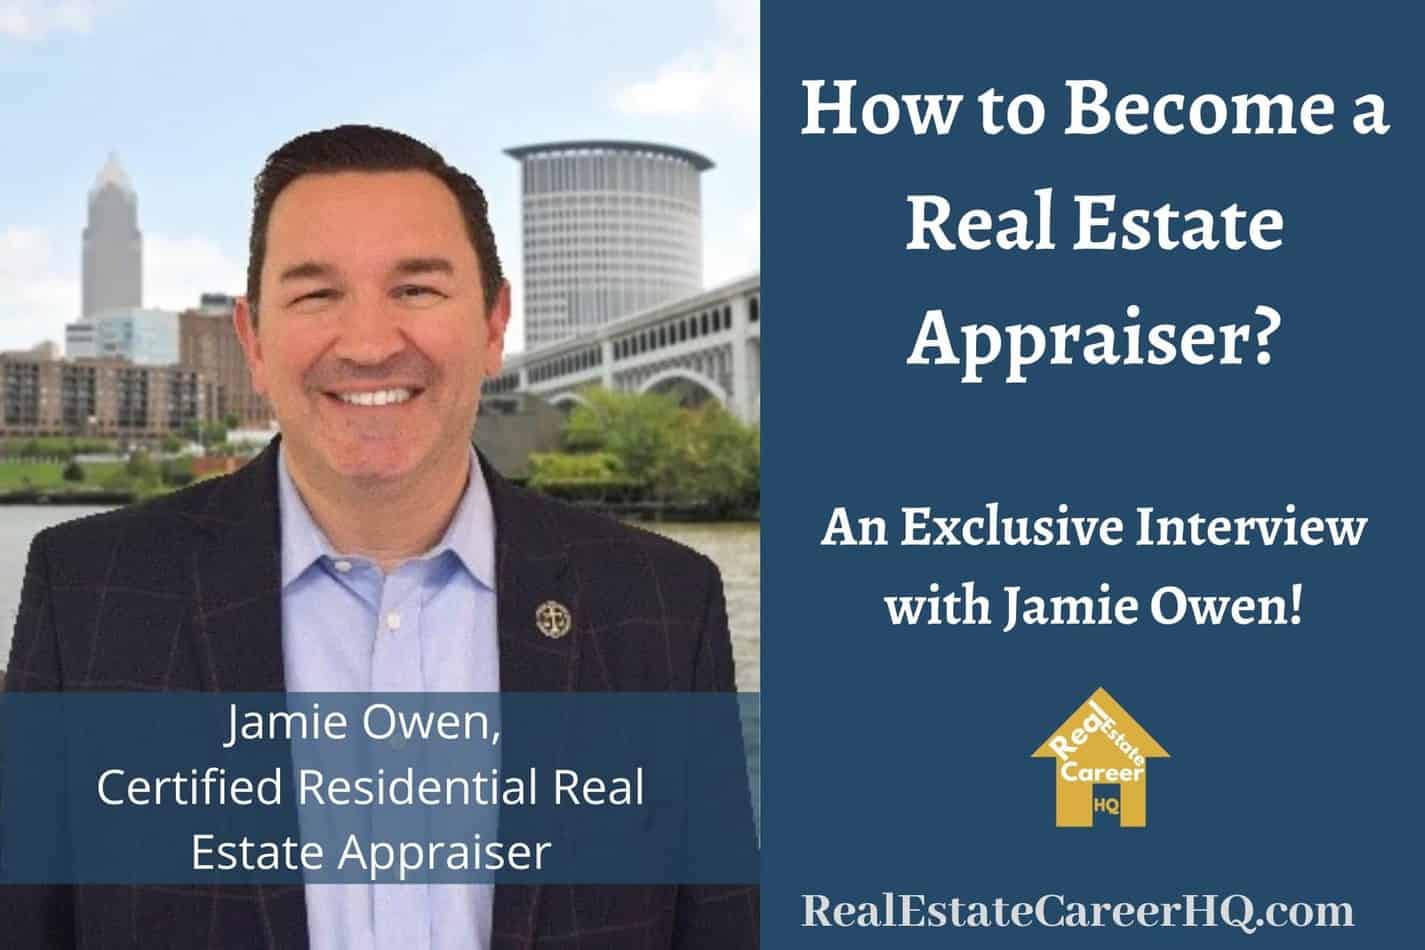 Real Estate Appraiser Interview with Jamie Owen